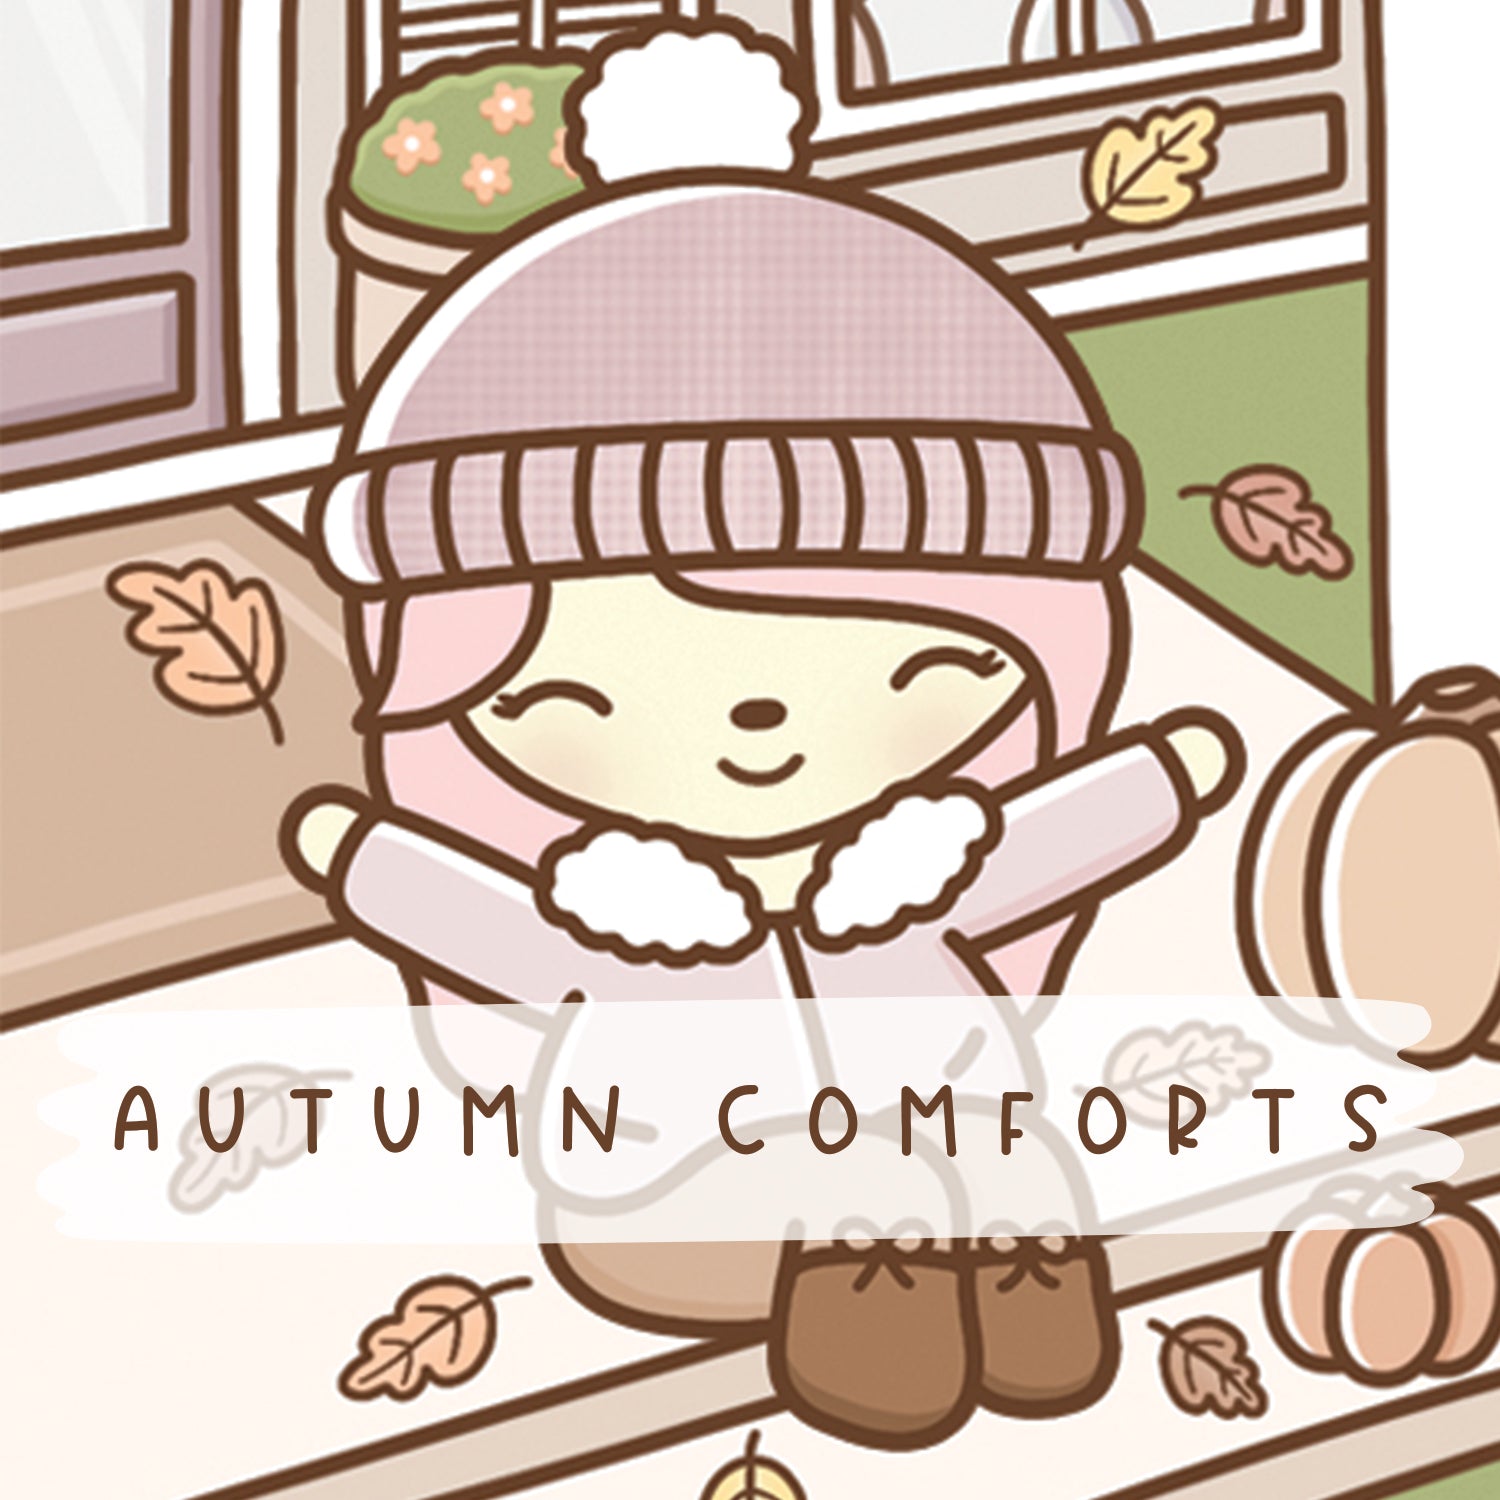 Autumn Comforts